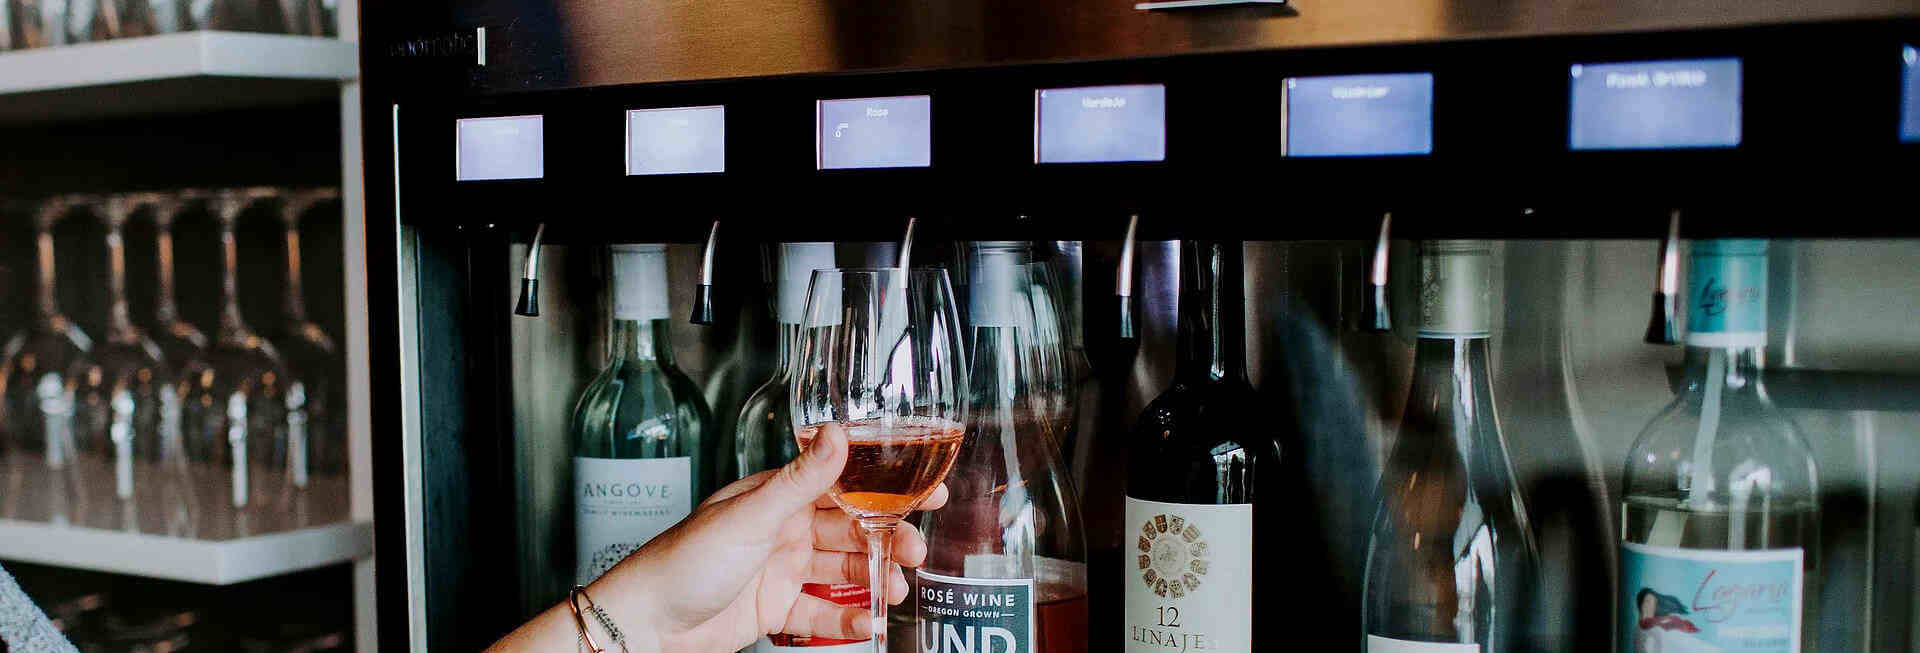 Wine Dispensers - Wine Dispensers & Wine Preservation